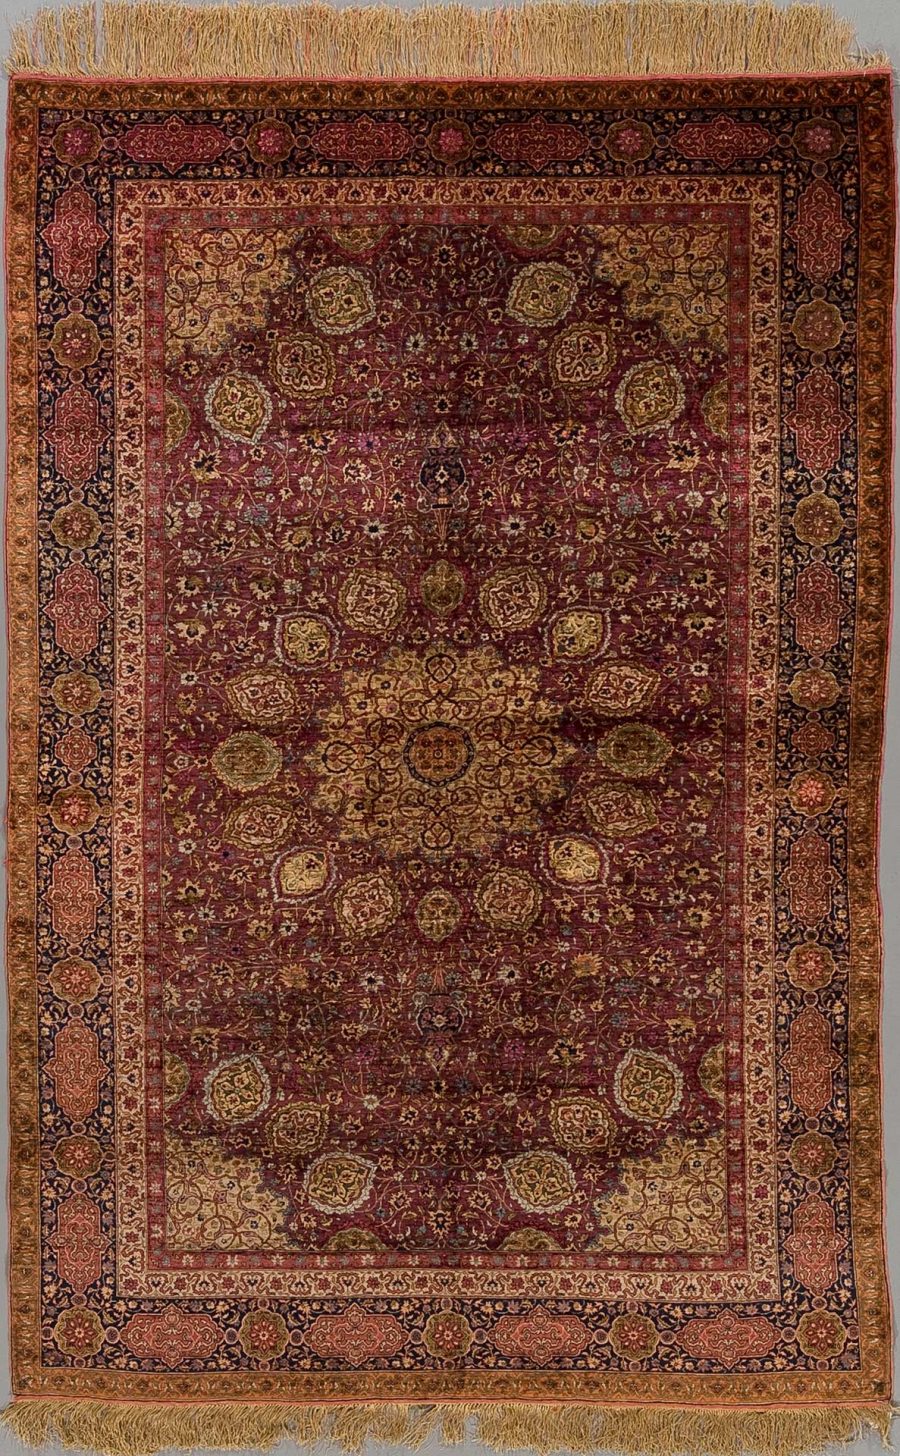 Antiker orientalischer Teppich mit dichtem Muster aus floralen und geometrischen Elementen in Rottönen mit Gold, Braun und blauen Akzenten, umgeben von mehreren Bordüren und mit Fransen an den Enden.